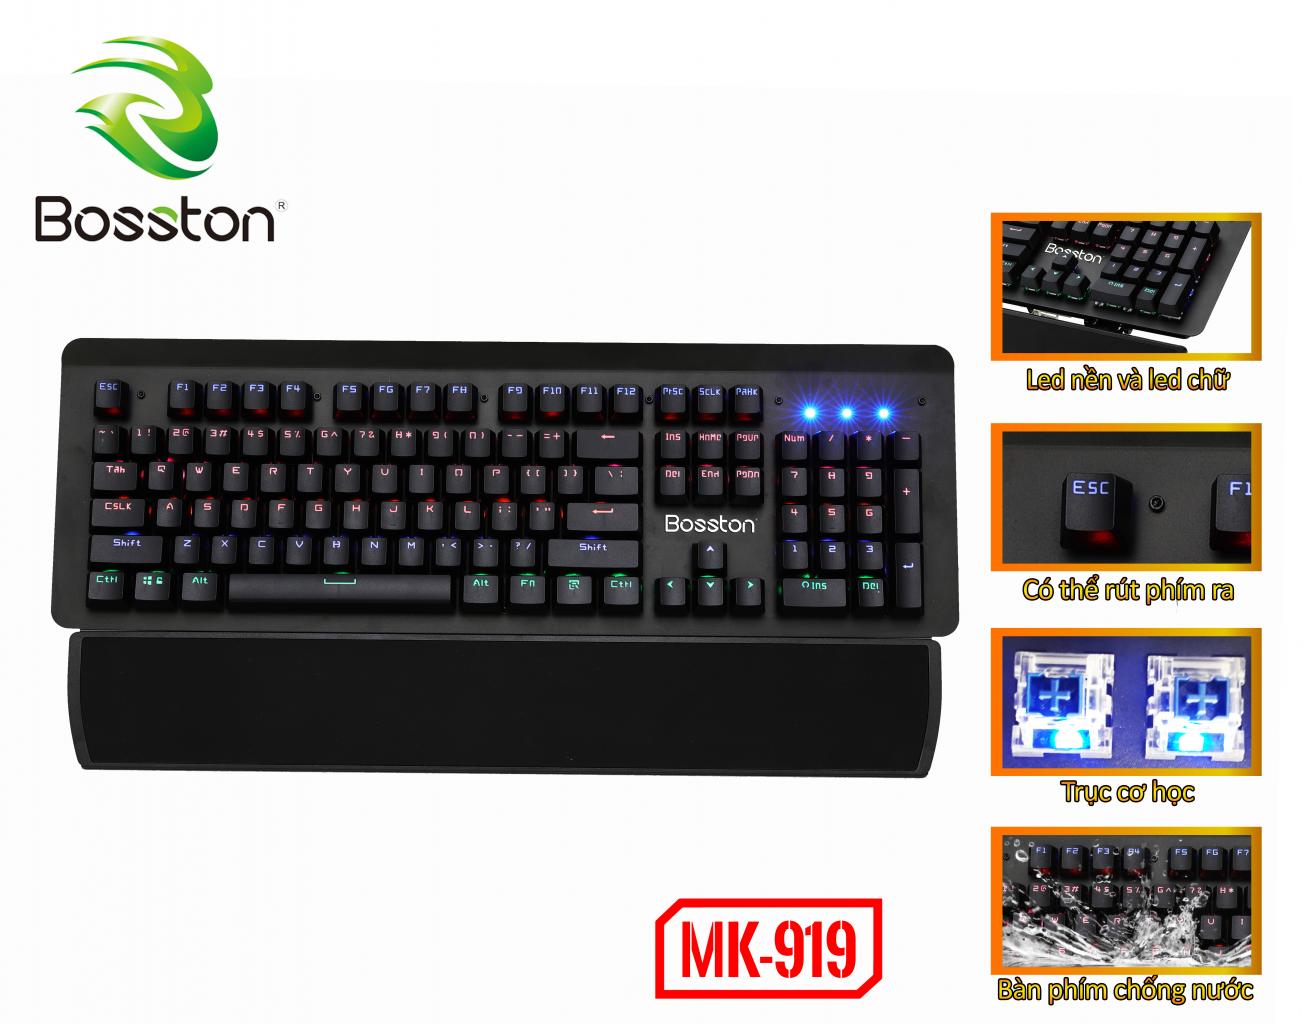 KB BOSSTON MK919 PHÍM CƠ USB